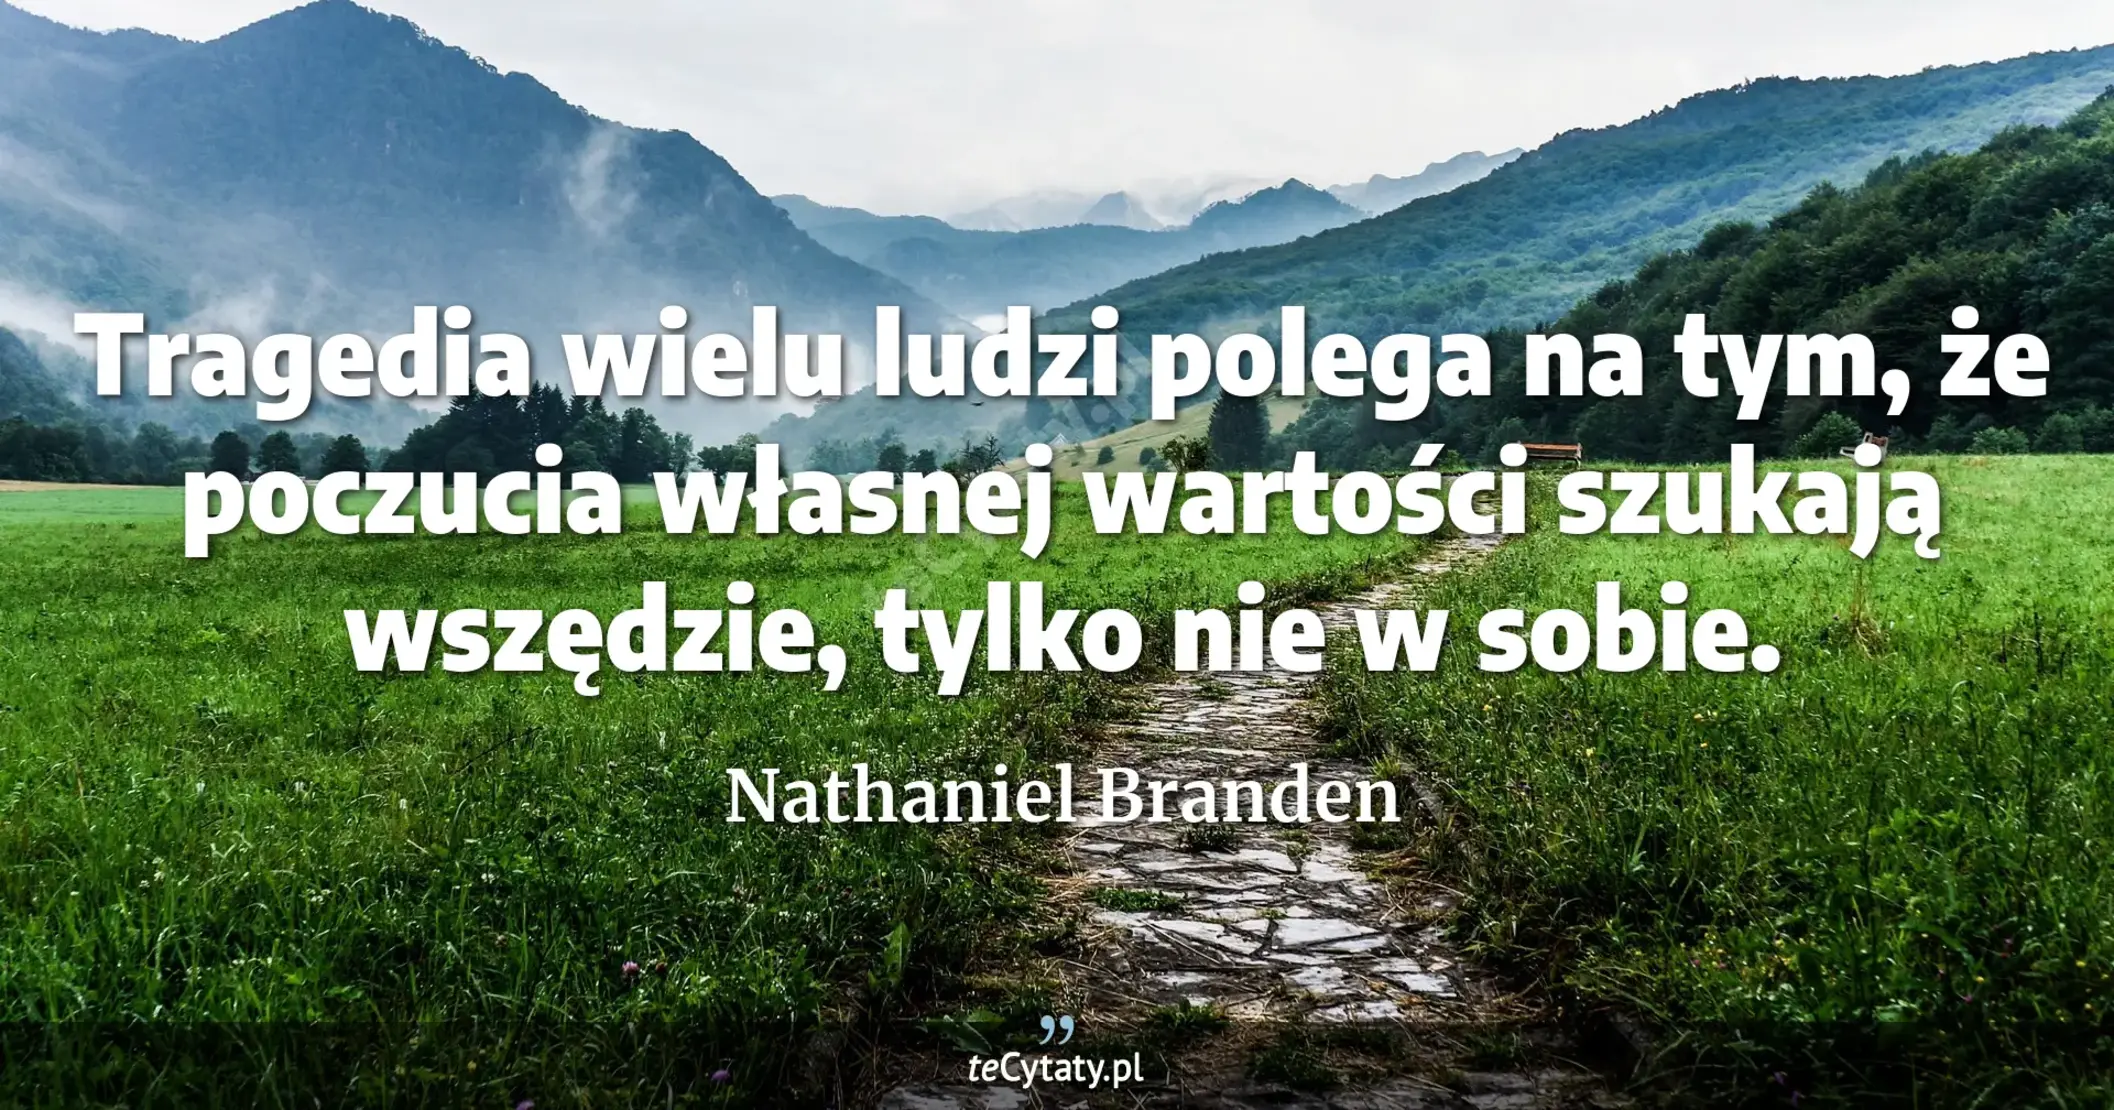 Tragedia wielu ludzi polega na tym, że poczucia własnej wartości szukają wszędzie, tylko nie w sobie. - Nathaniel Branden